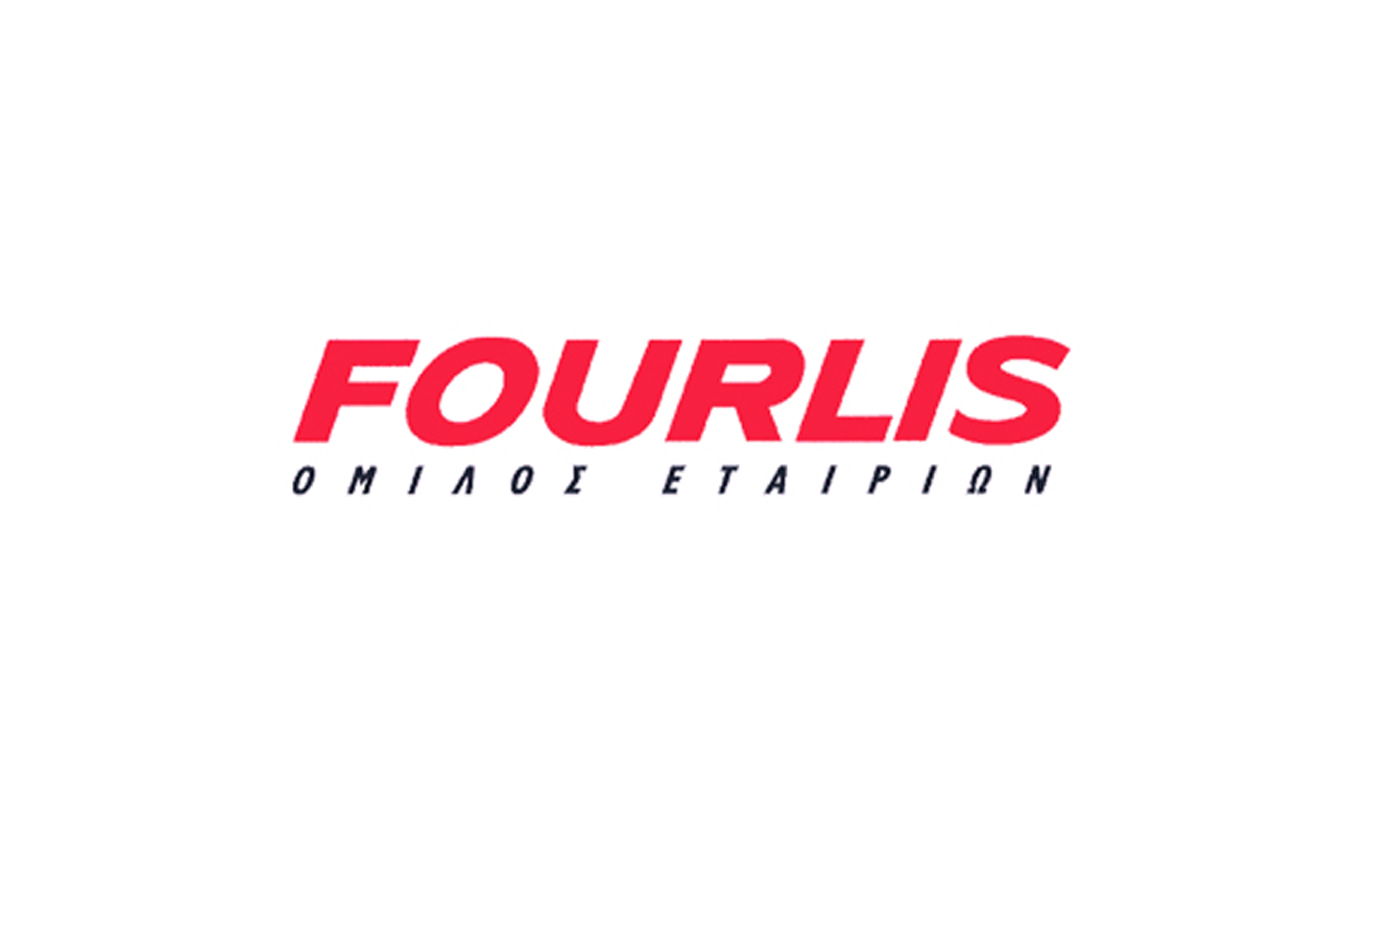 Όμιλος Fourlis: Απέκτησε το Florida 1, το μεγαλύτερο Εμπορικό Πάρκο της χώρας – Πλάνα για 200 εκατ. ευρώ επενδύσεις